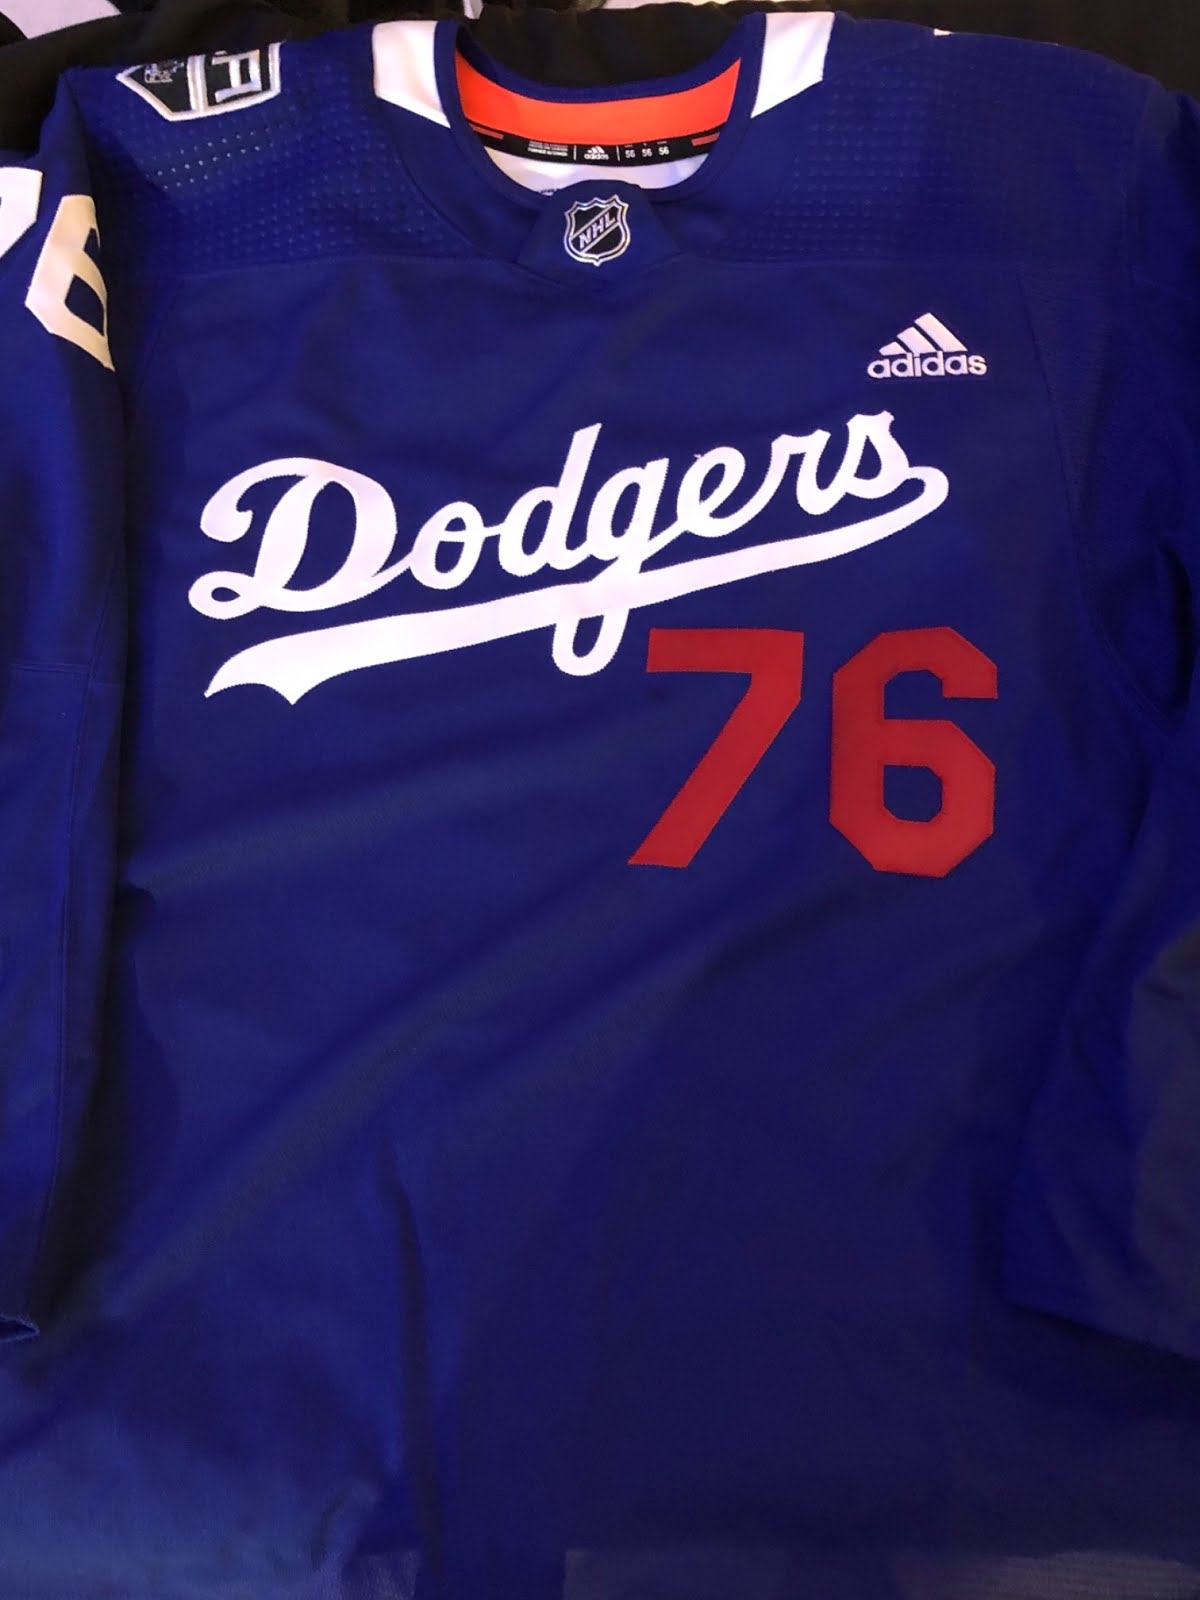 Dodgers Pride Night jerseys for LA Kings - True Blue LA